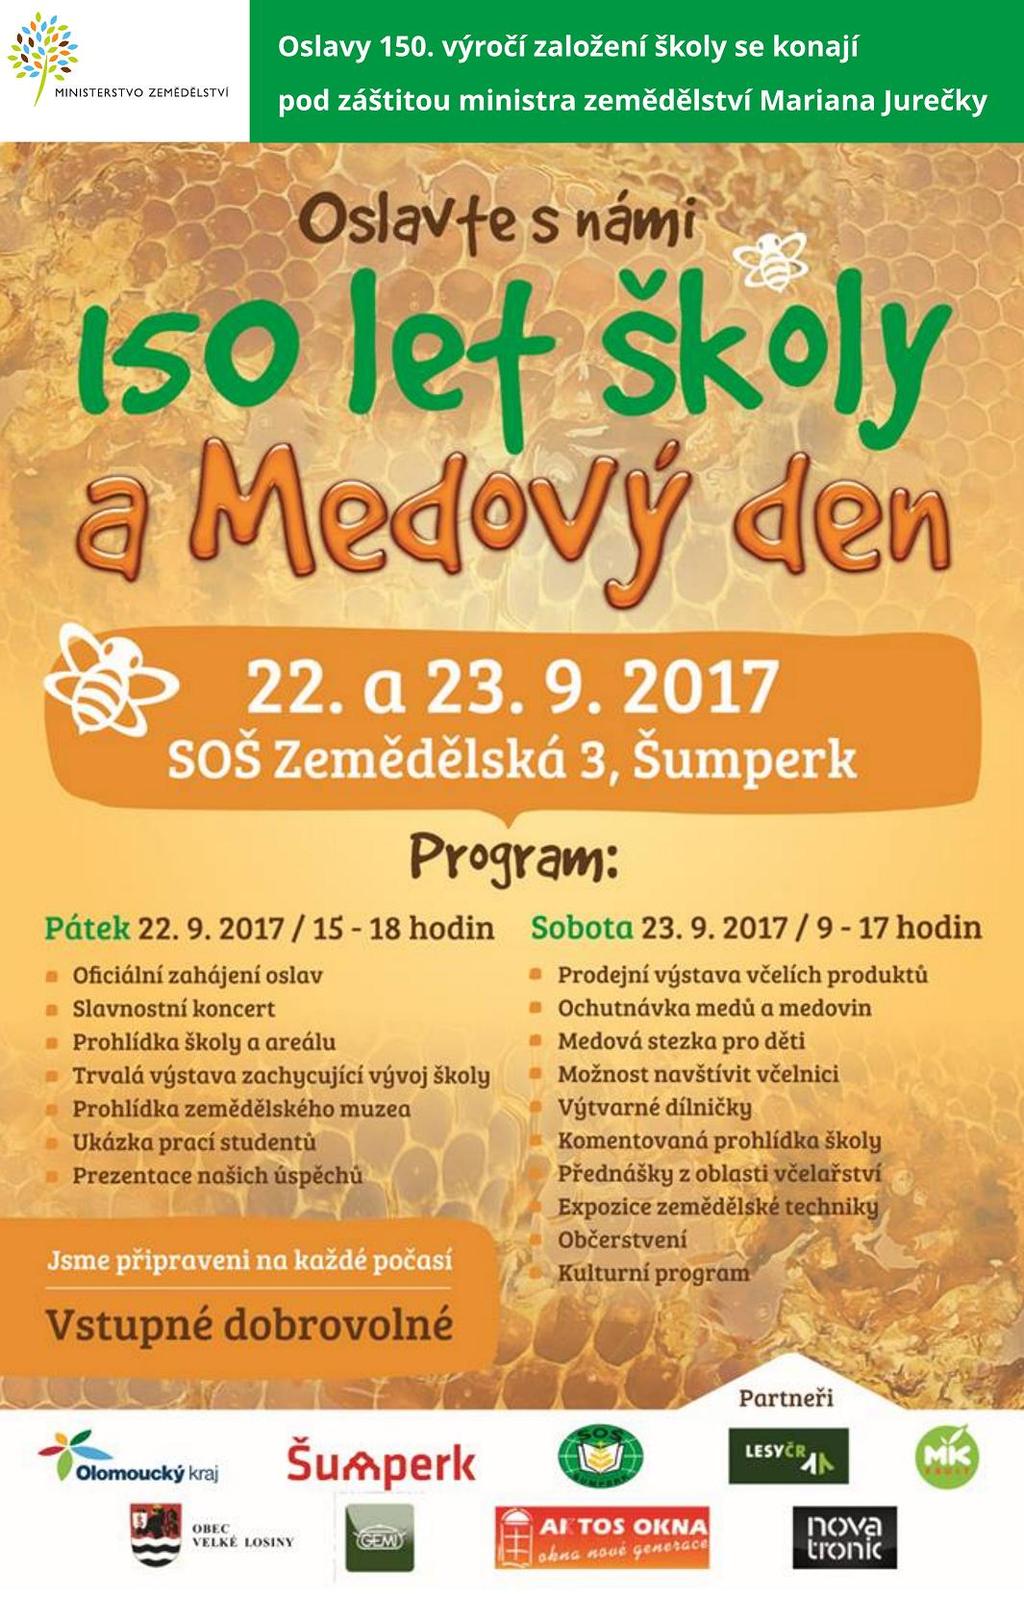 150 LET ŠKOLY A MEDOVÝ DEN Oslava výročí založení Střední odborné školy Zemědělské v Šumperku a Medový den se